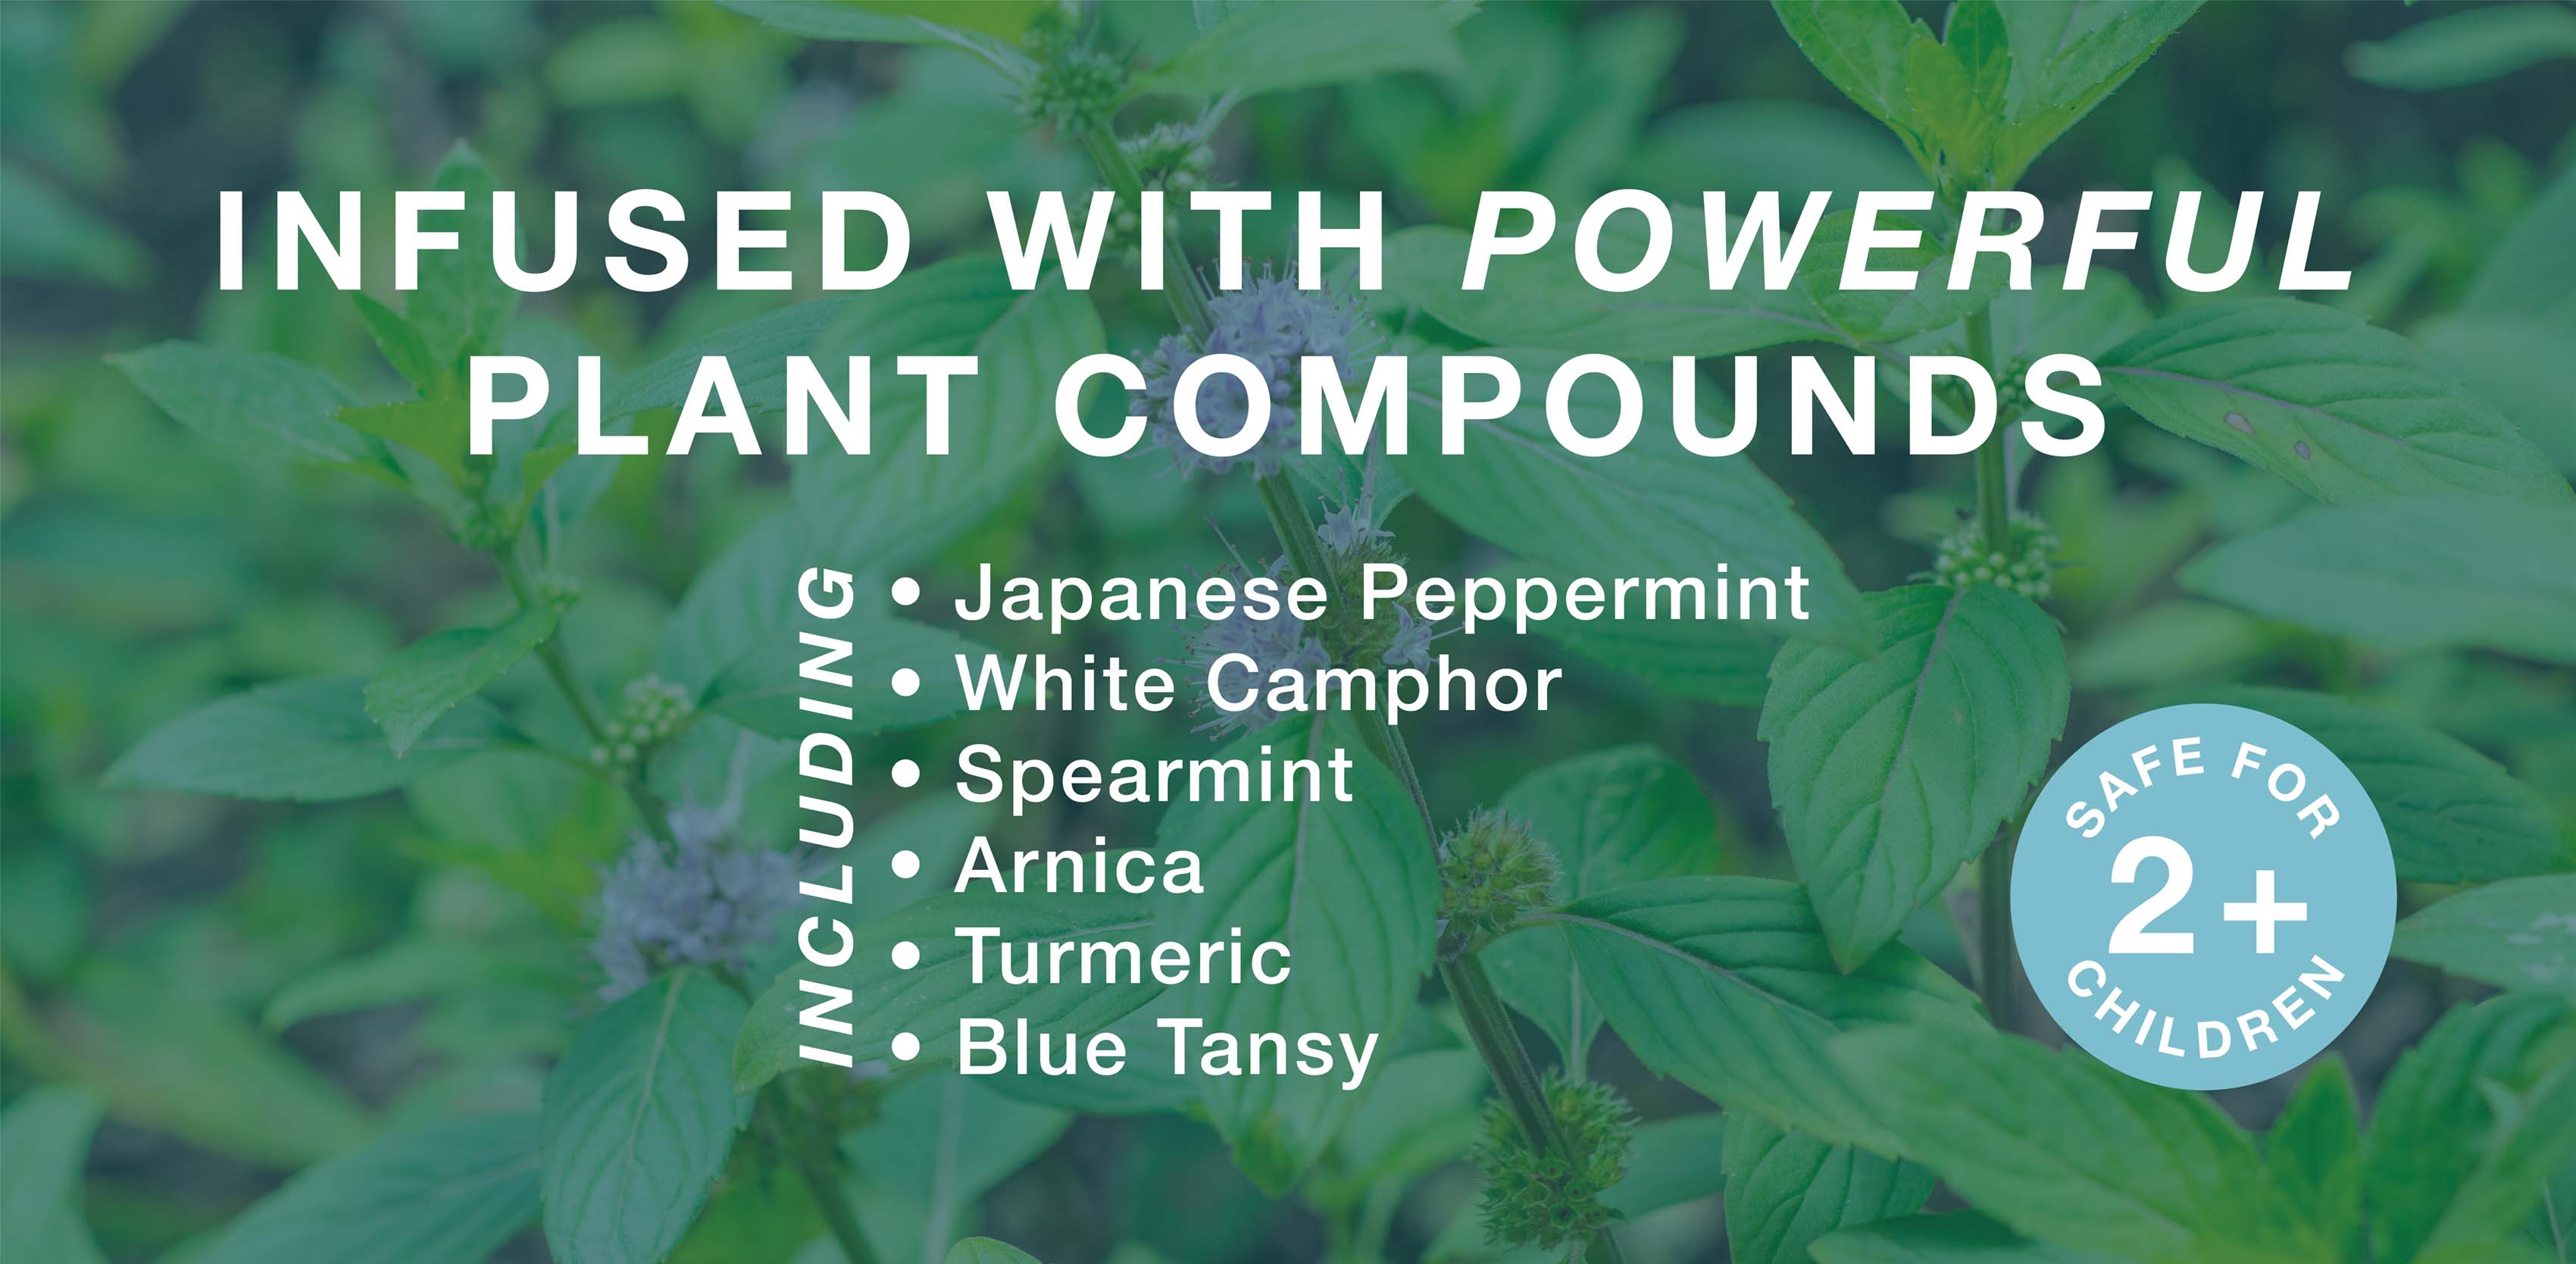 Fusionado con poderosos compuestos vegetales que incluyen menta japonesa, alcanfor blanco y menta verde.